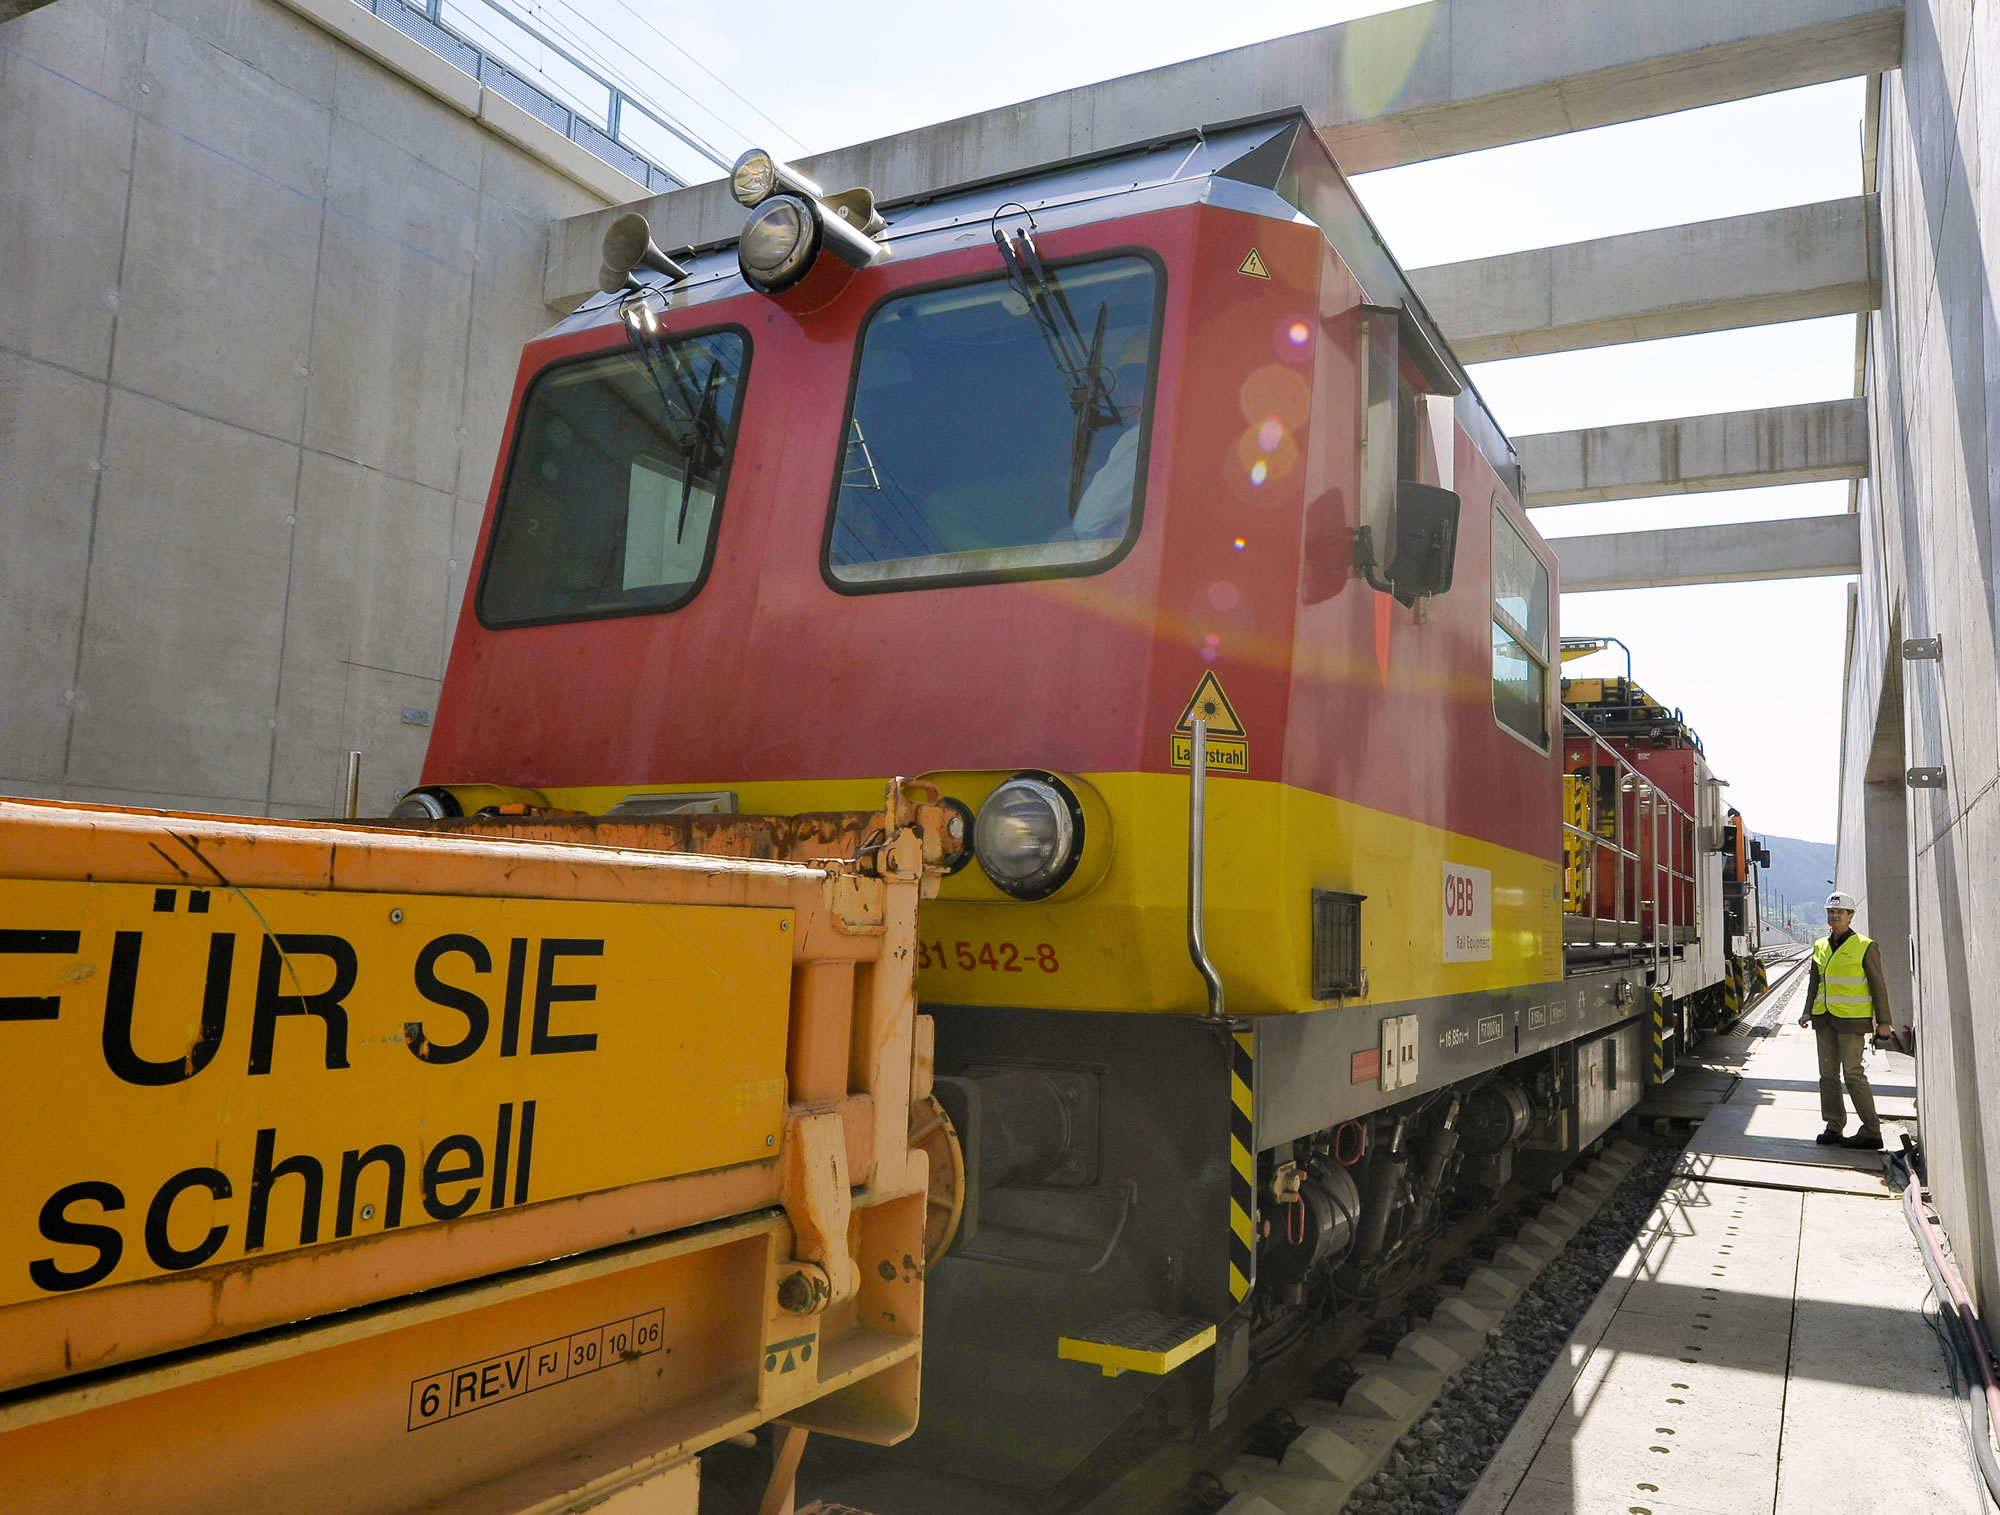 Vedere de detaliu a unei locomotive cu un lucrător în construcții în echipamentul de siguranță care stă în picioare pe platforma din dreapta, supraveghind locomotiva.